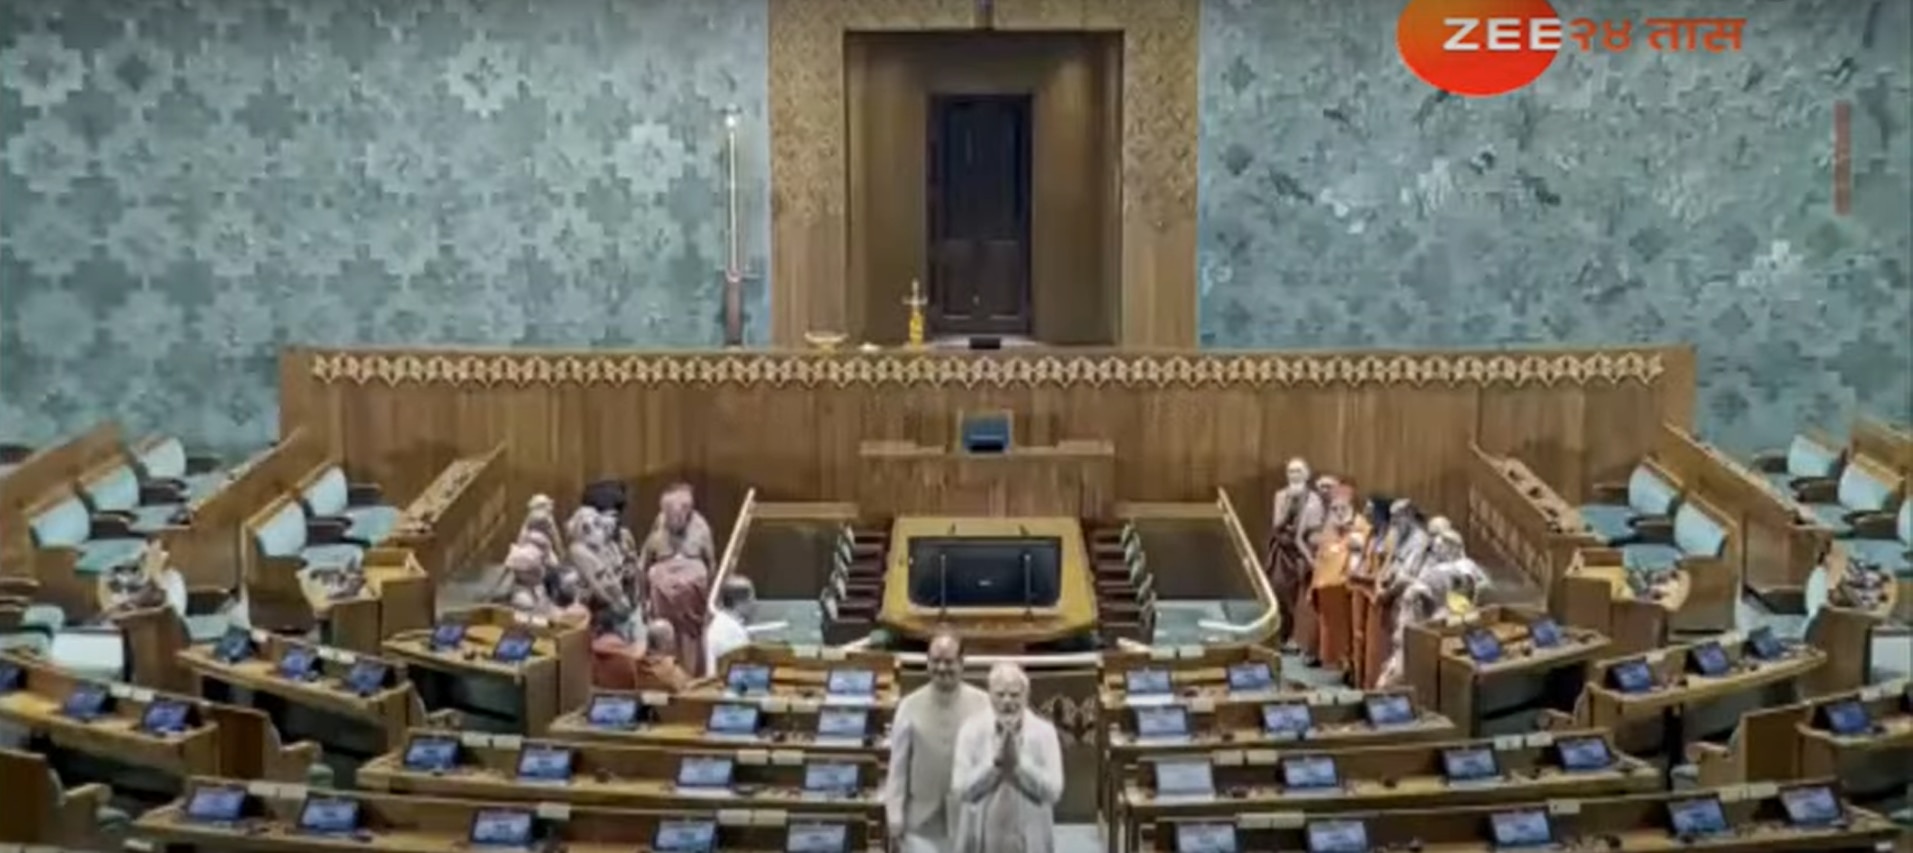 नव्या संसद भवनाचे आज मोदी यांच्या हस्ते उदघाटन, 19 विरोधी पक्षांचा बहिष्कार